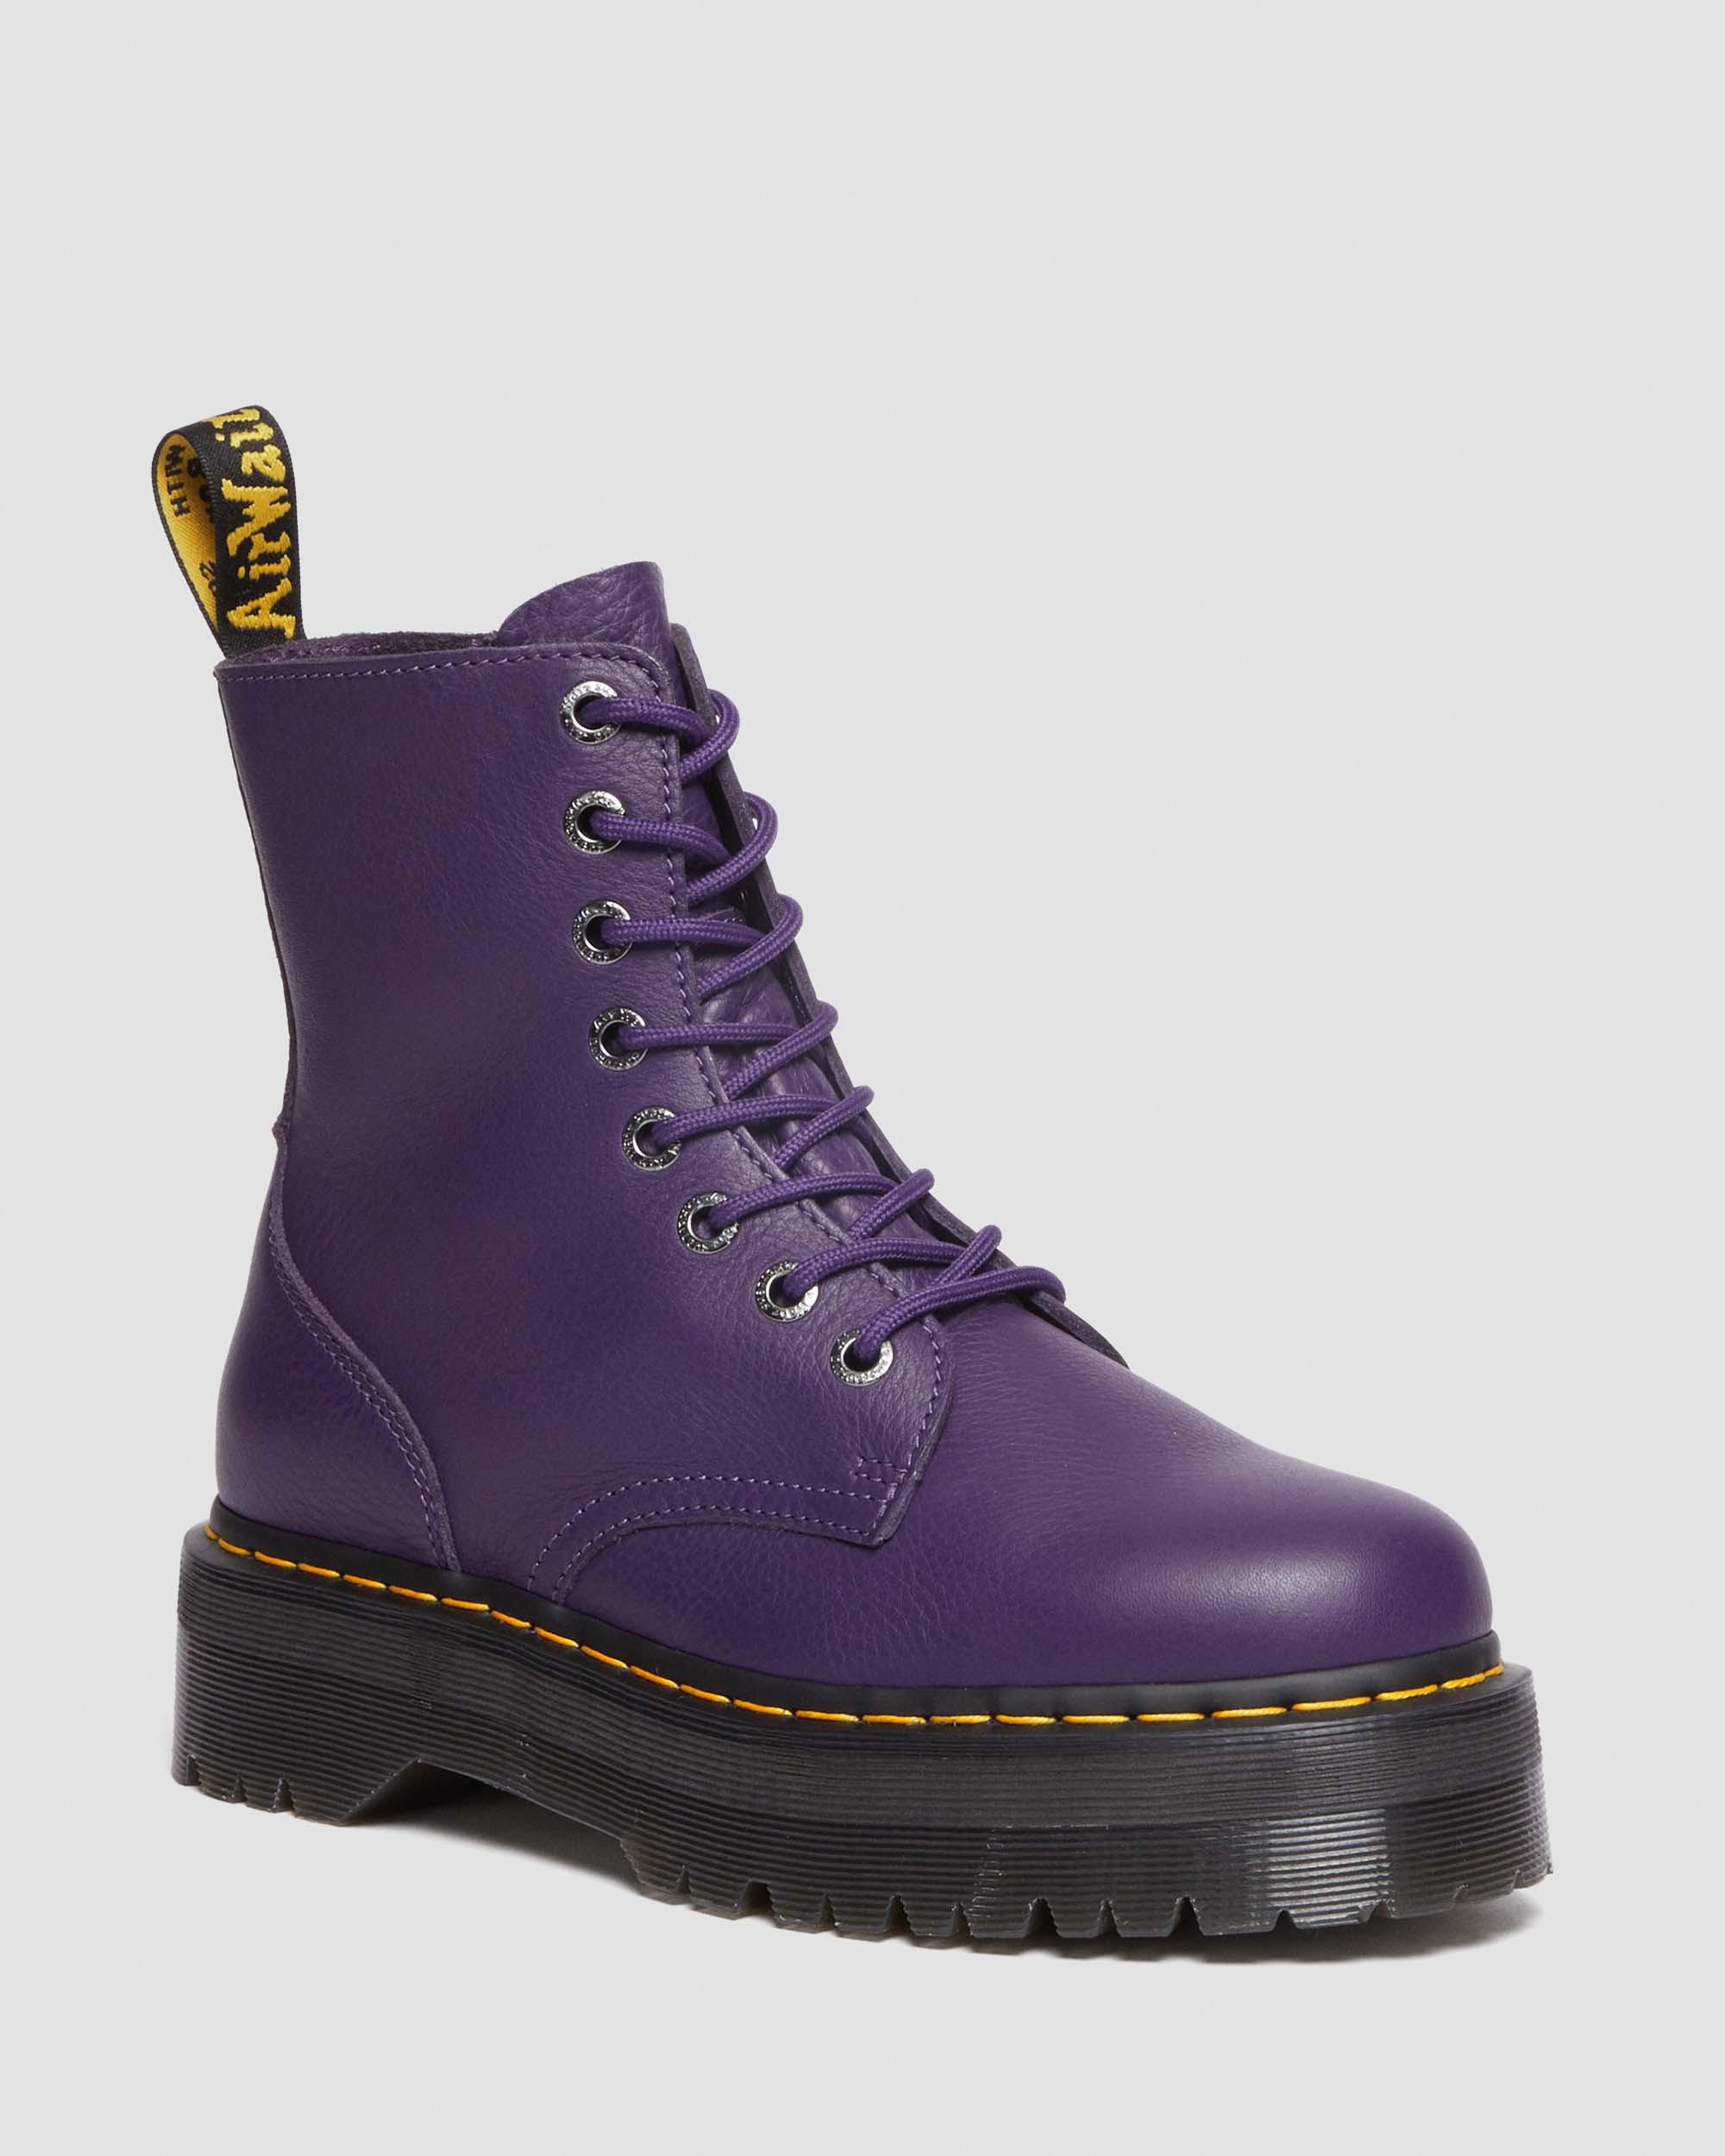 Jadon III Boot Pisa Leather Platforms in Rich Purple | Dr. Martens